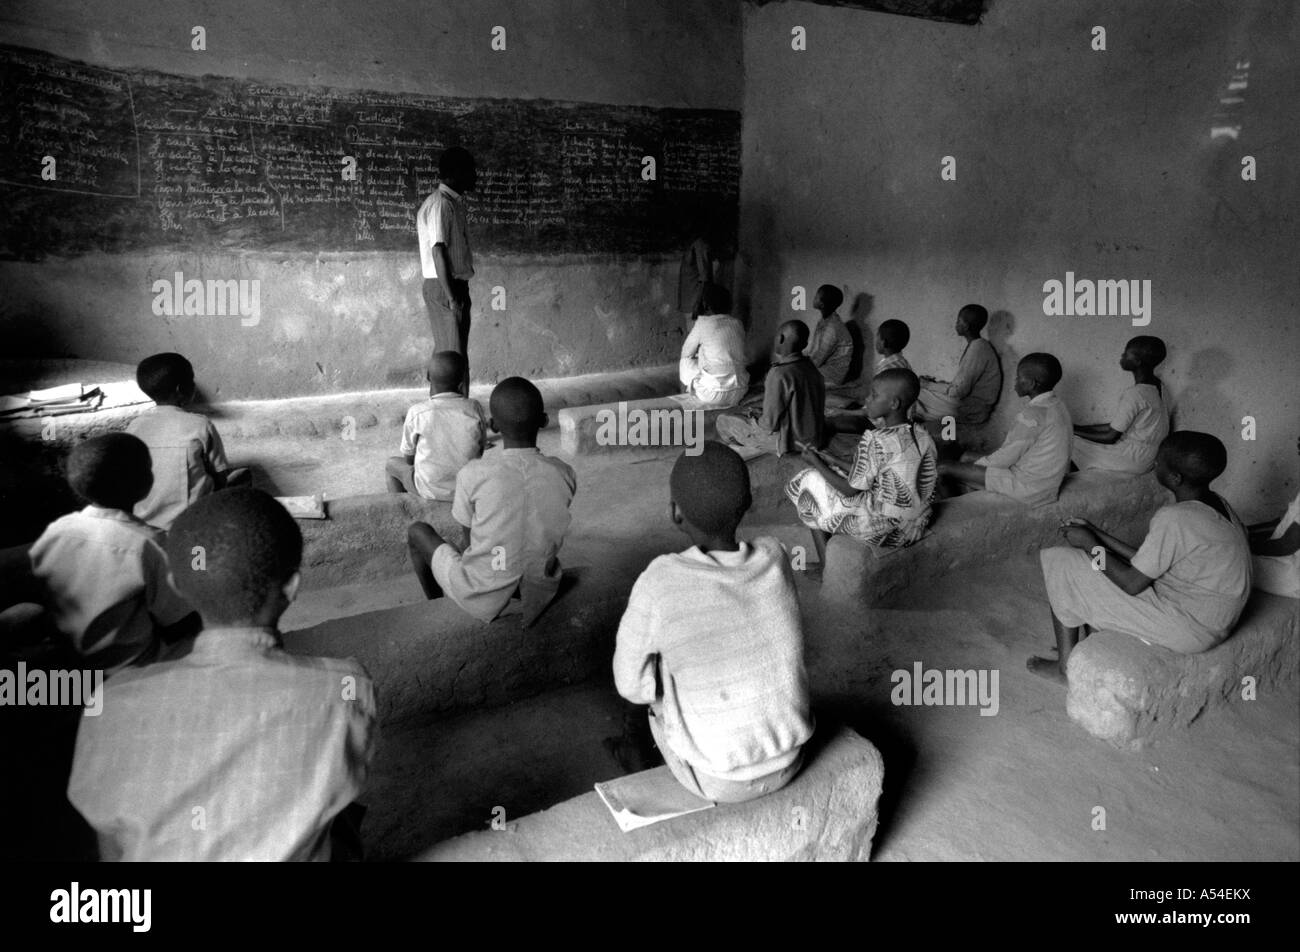 Painet hn2028 729 s en blanco y negro escuelas primaria kigoma Ruanda país nación en desarrollo económicamente menos Foto de stock